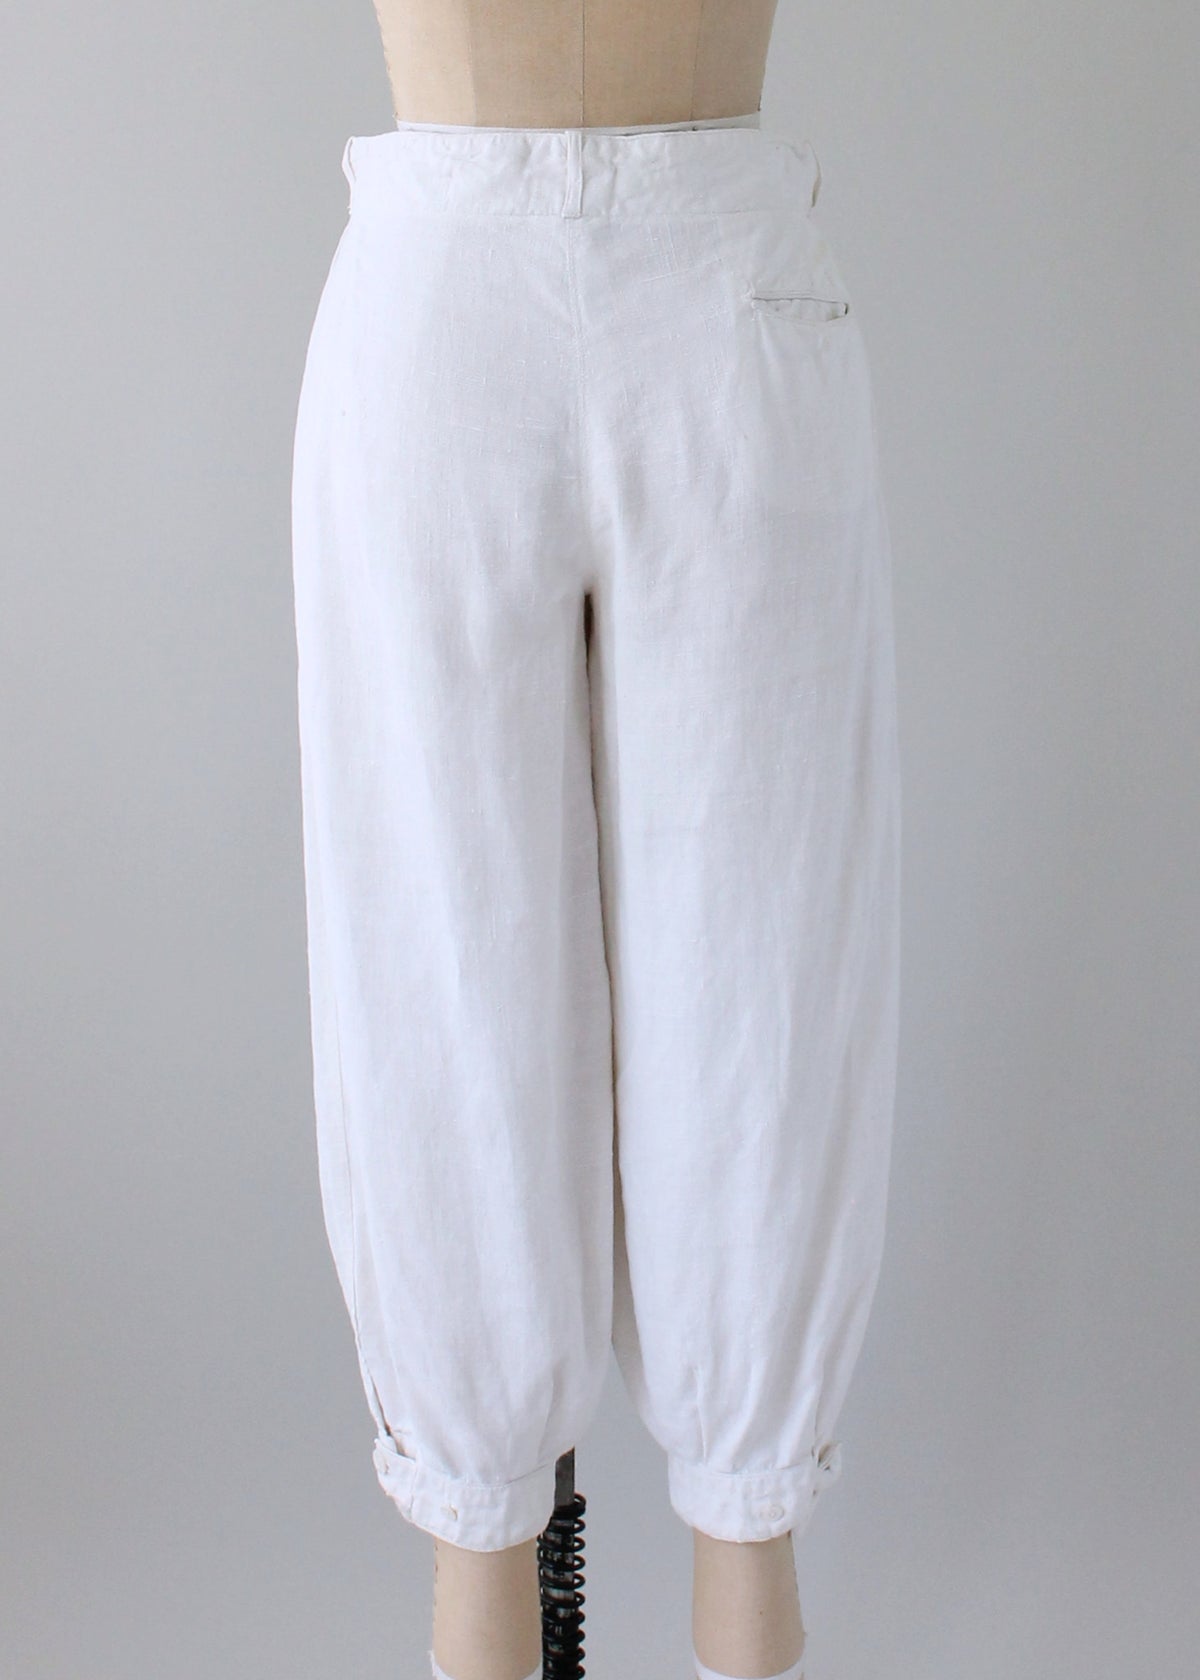 Vintage 1920s White Linen Plus Fours Breeches - Raleigh Vintage